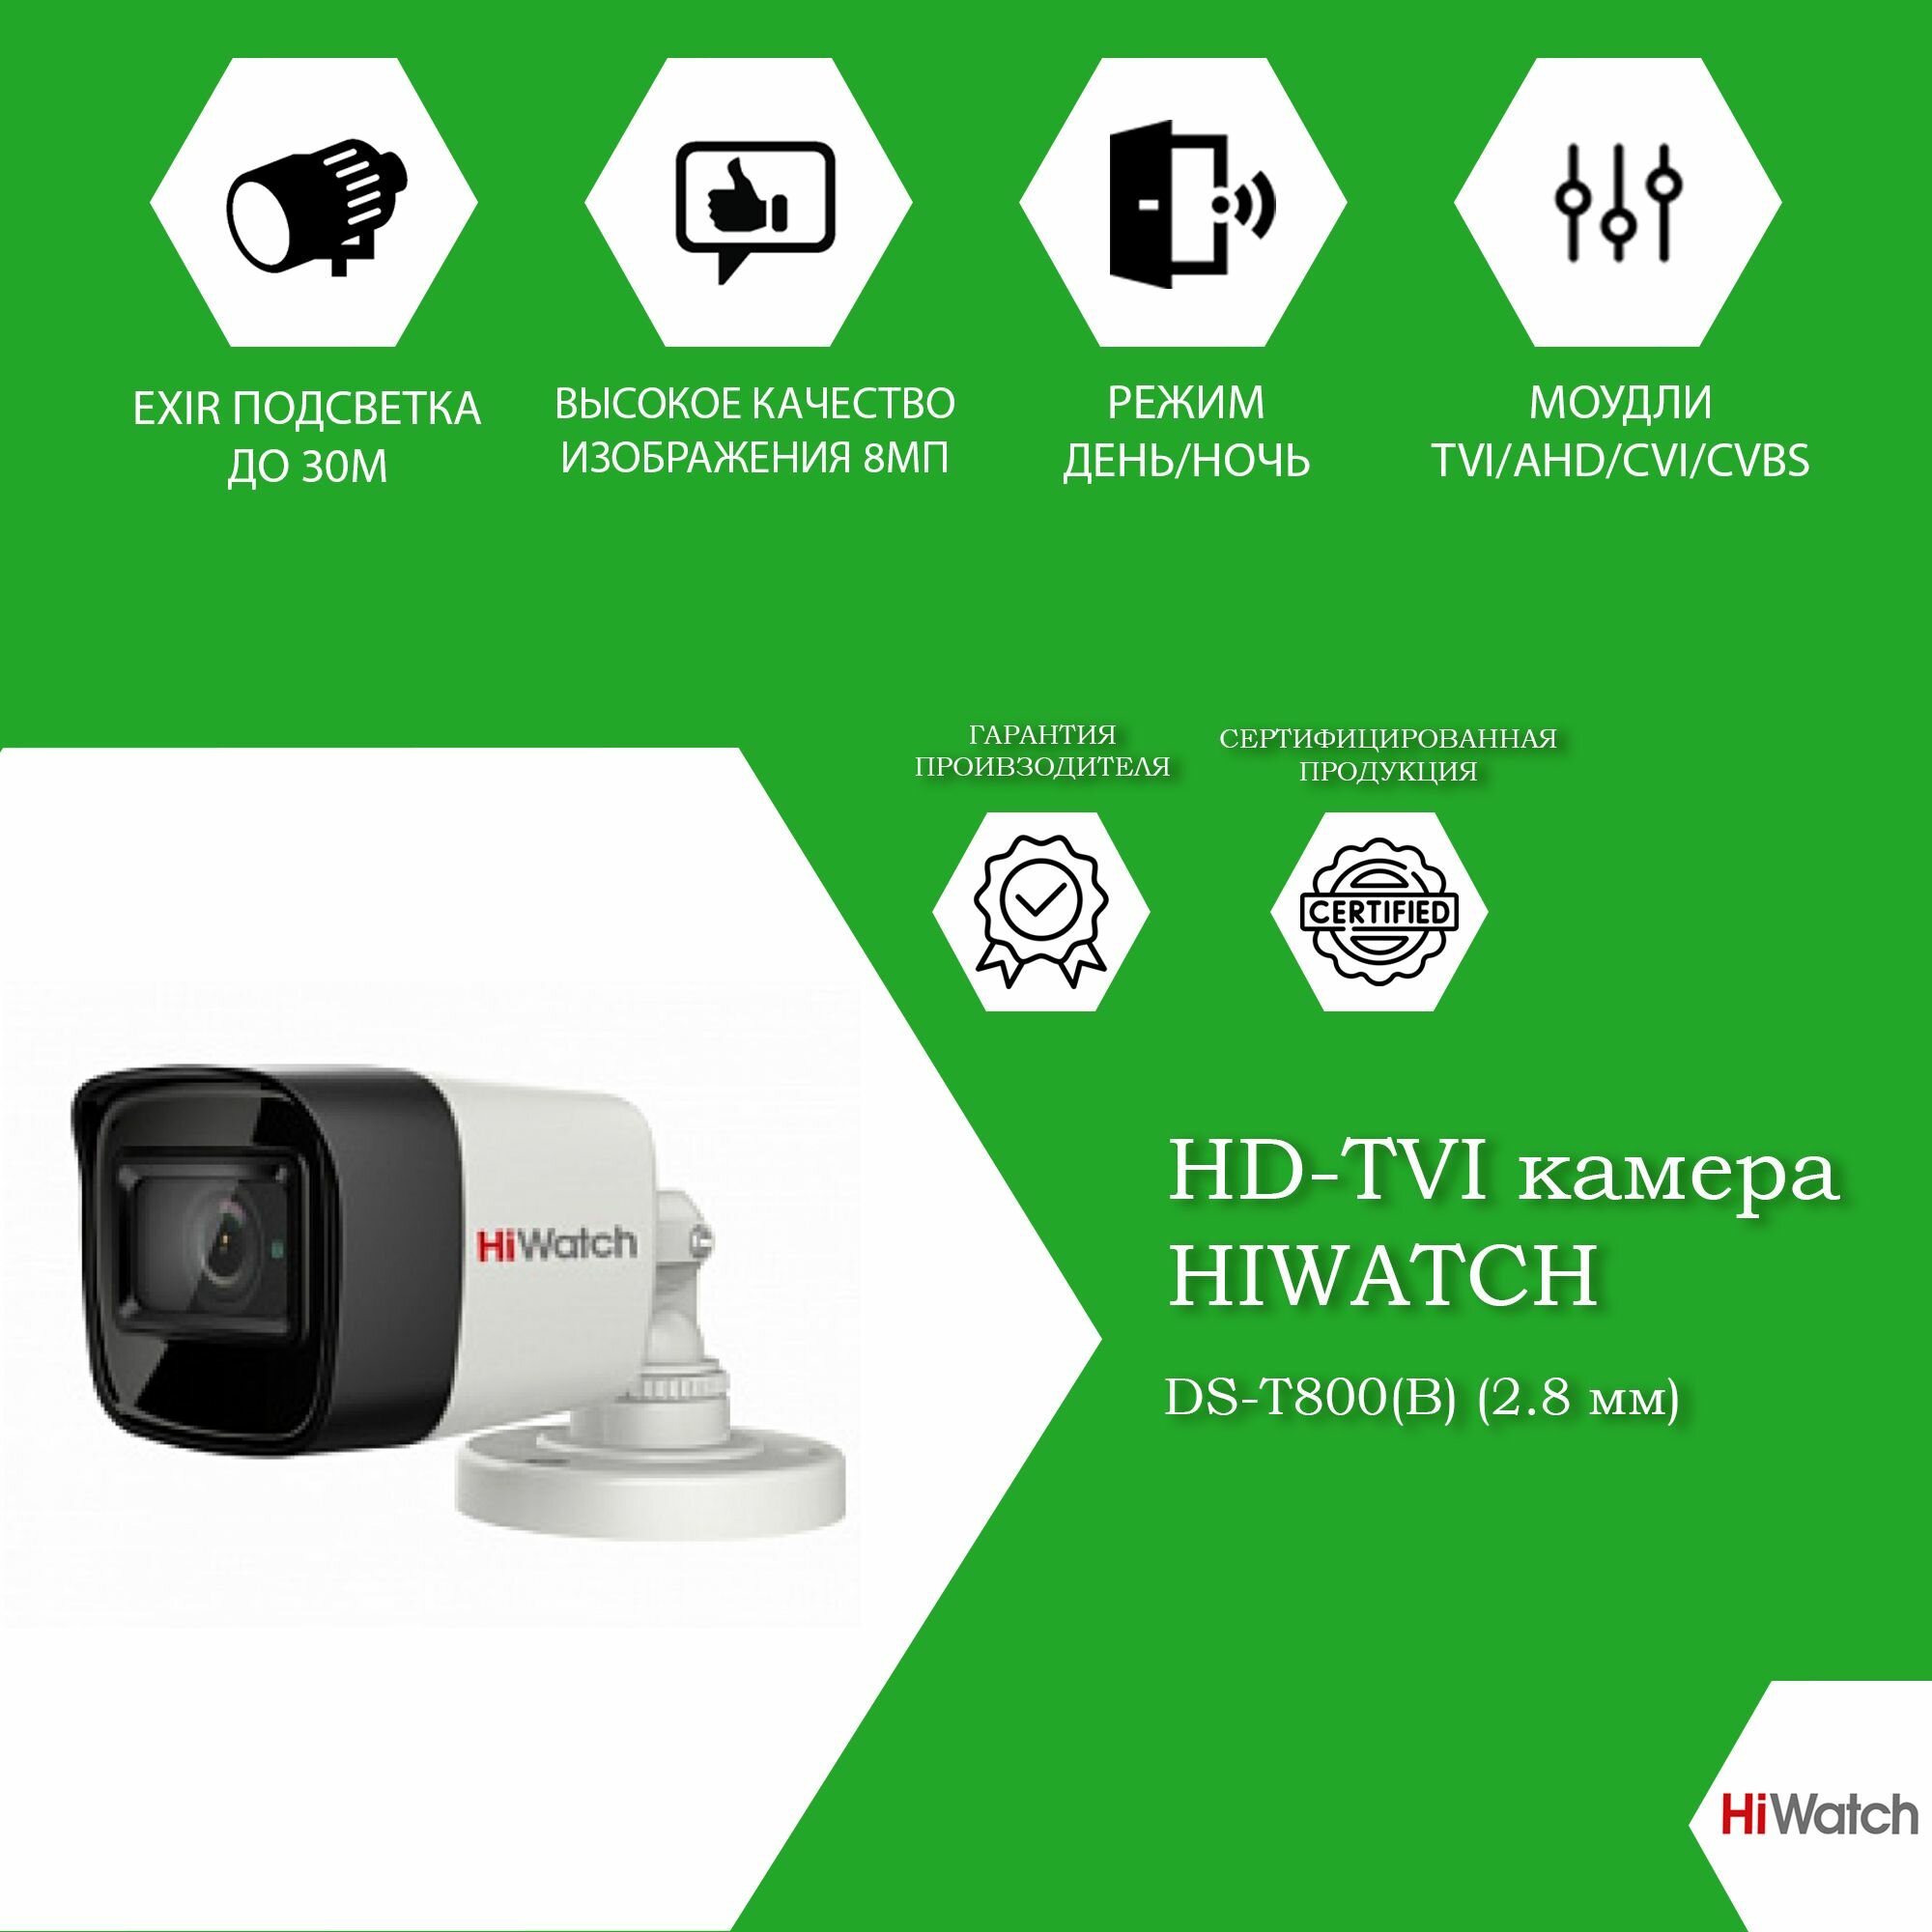 8Мп уличная цилиндрическая HD-TVI камера HiWatch DS-T800(B)(2.8mm) с EXIR-подсветкой до 30м